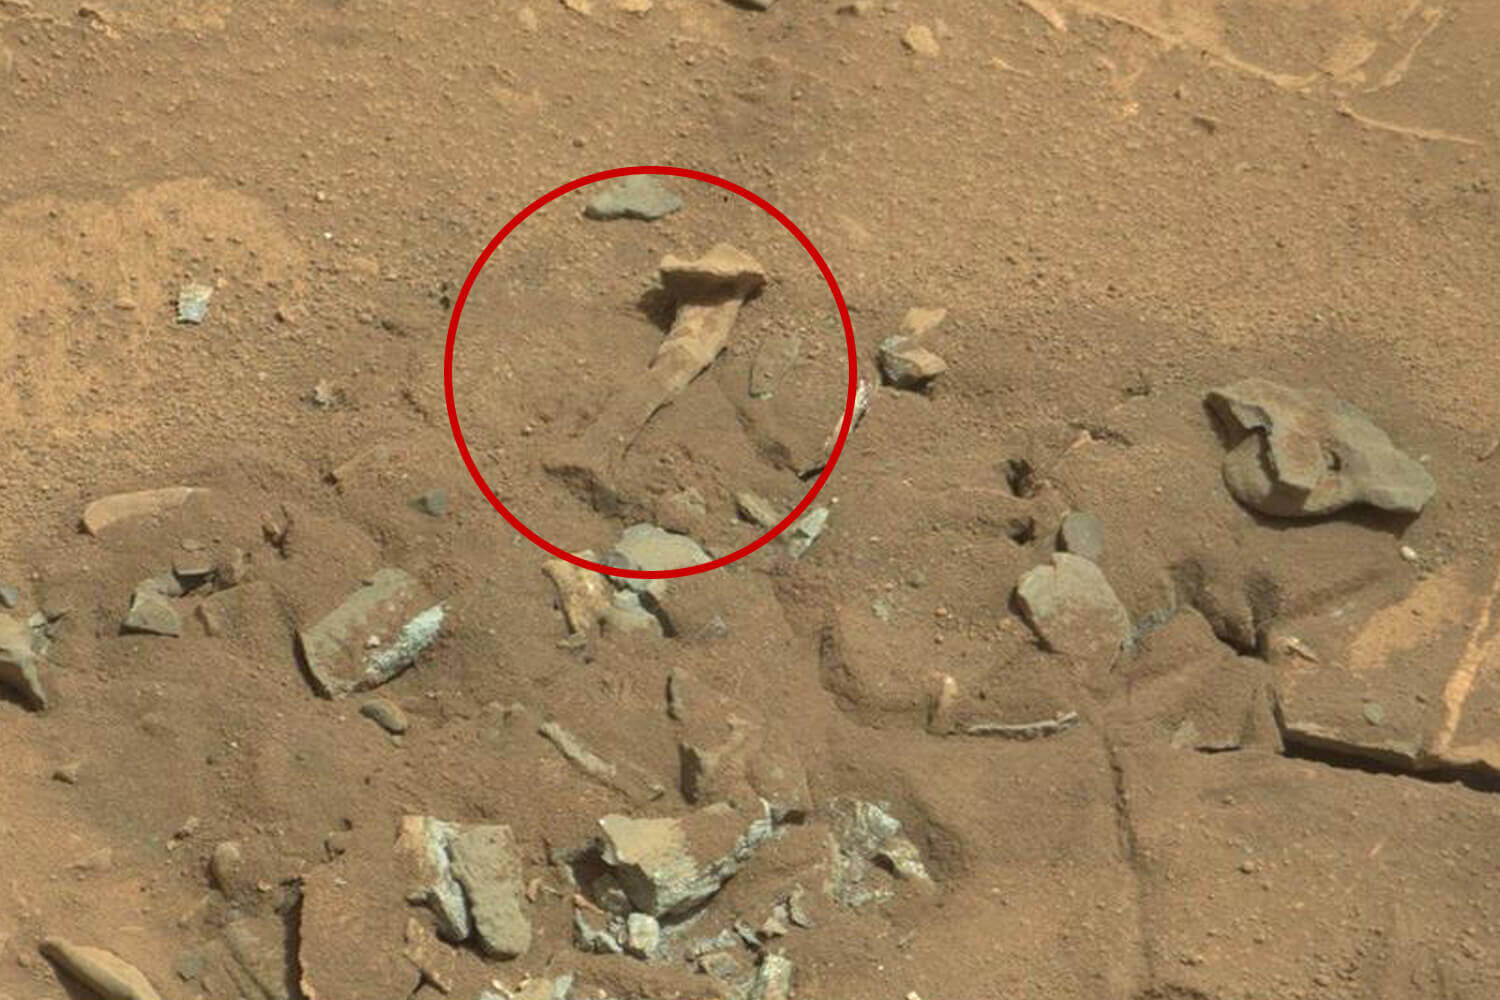 Auf der Oberfläche des mars liegen «menschliche Knochen» und andere Gegenstände — was ist das?